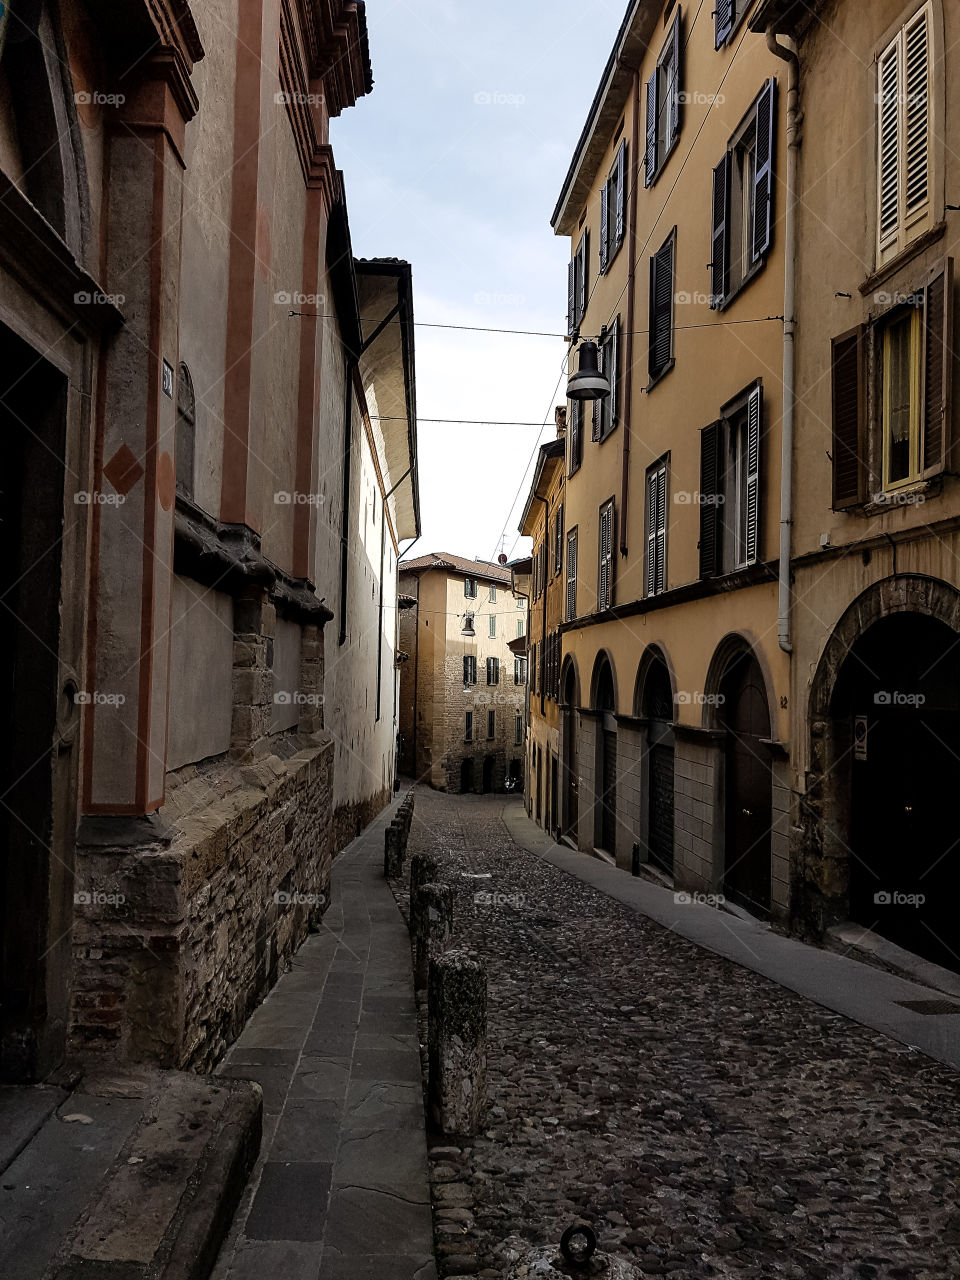 The Beauty of Bergamo, Italy